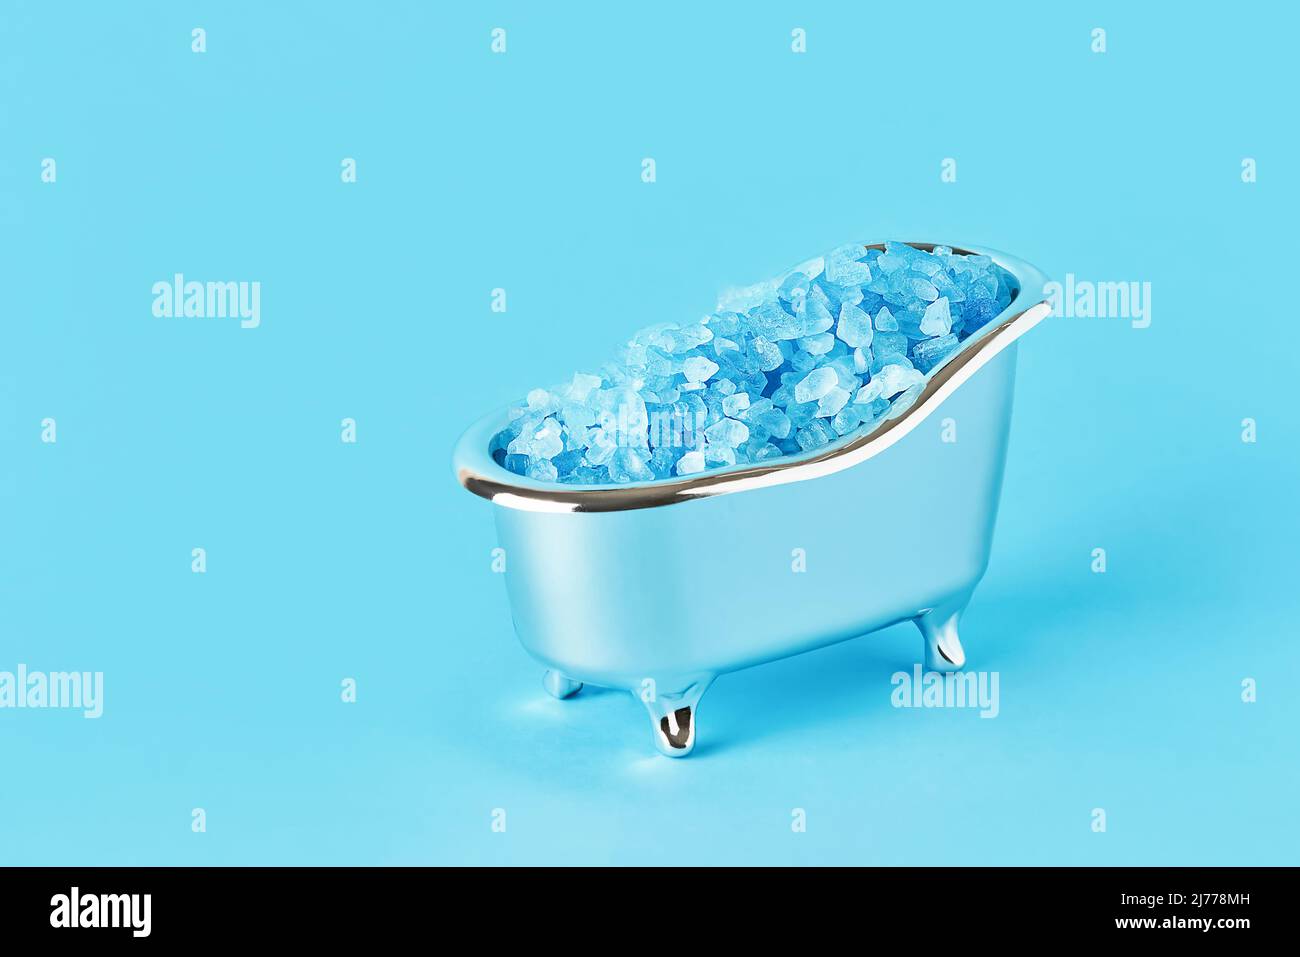 Sel de bain bleu dans une petite baignoire sur fond bleu. SPA, concept de soins du corps. Copier l'espace pour le texte Banque D'Images